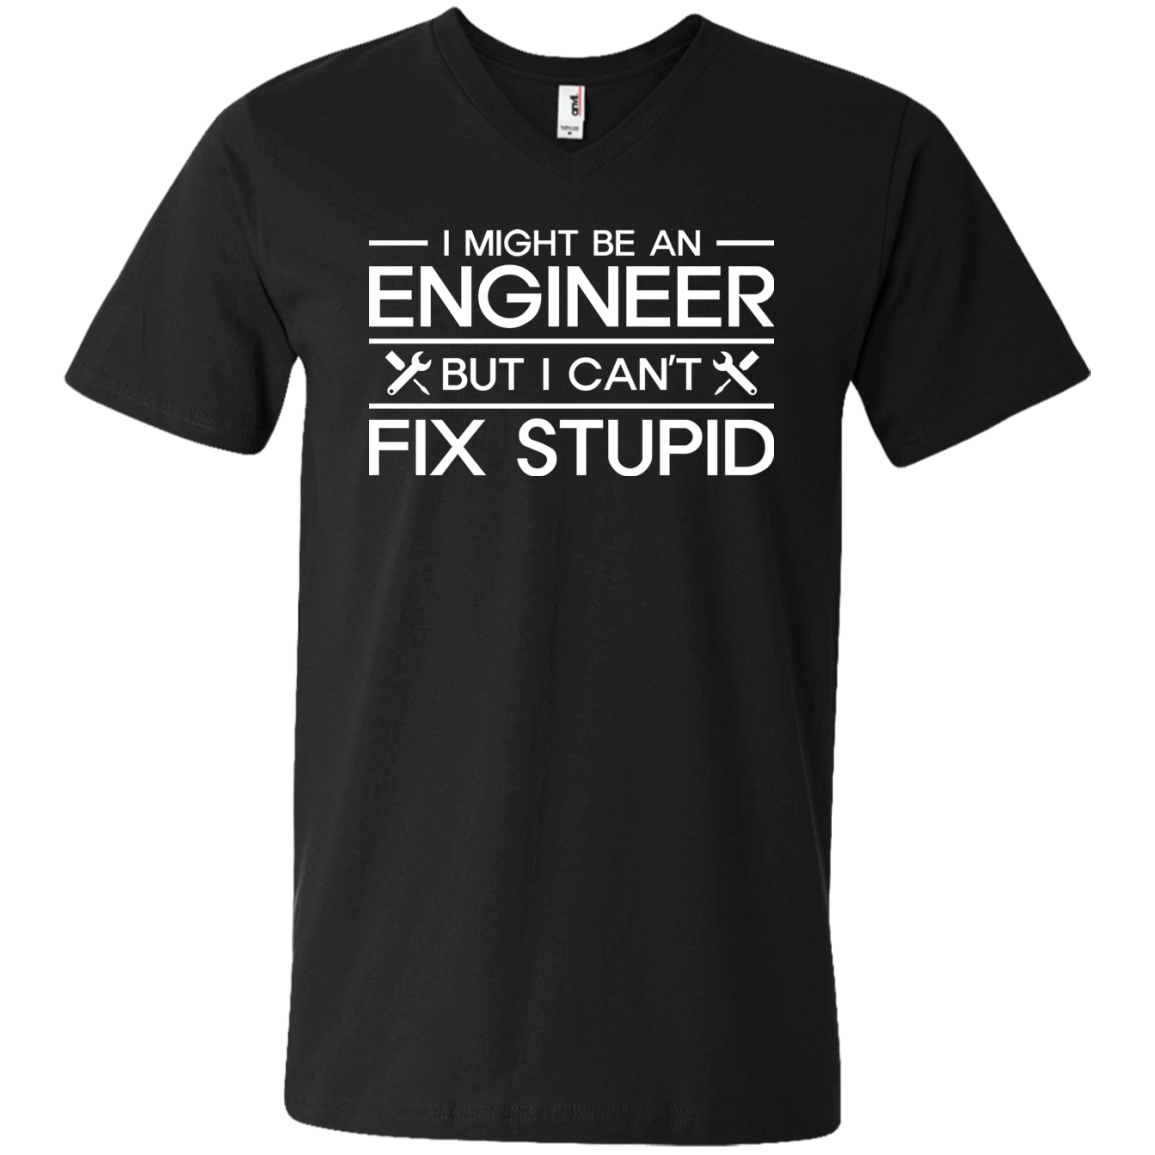 Puede que sea ingeniero, pero no puedo arreglar cosas estúpidas